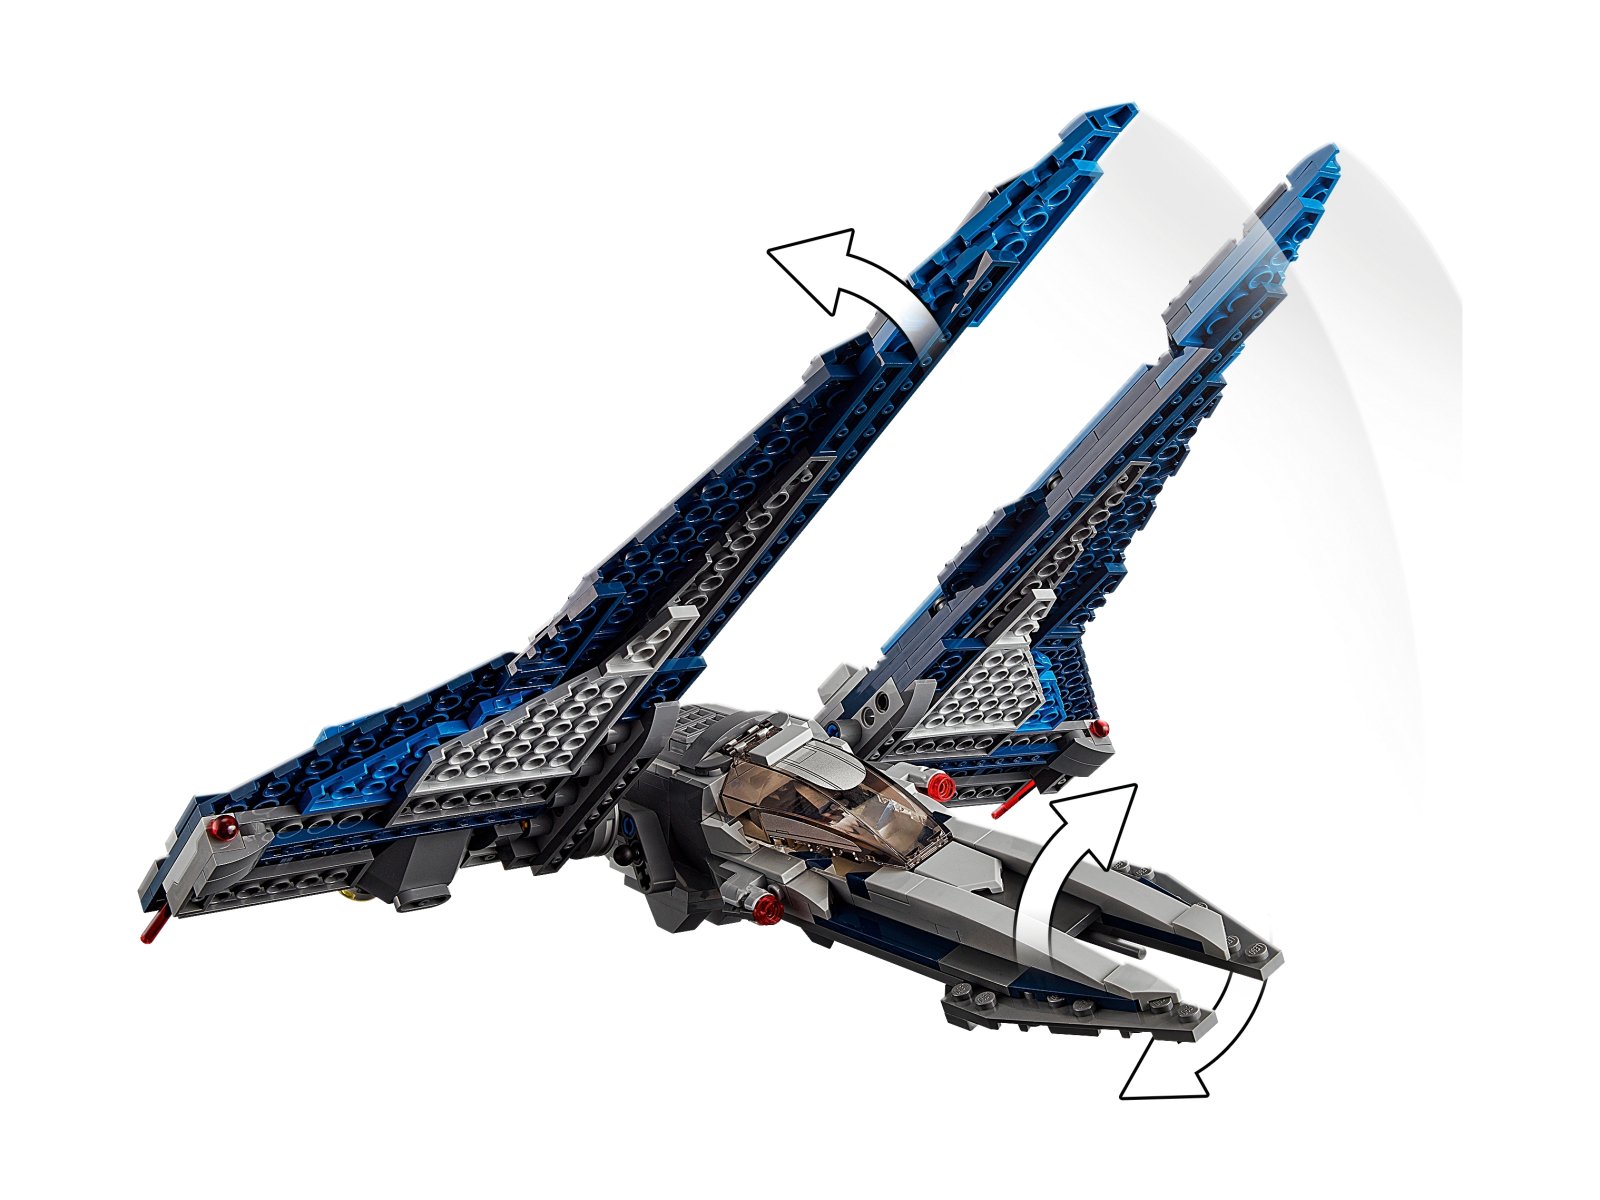 LEGO Star Wars Mandaloriański myśliwiec™ 75316